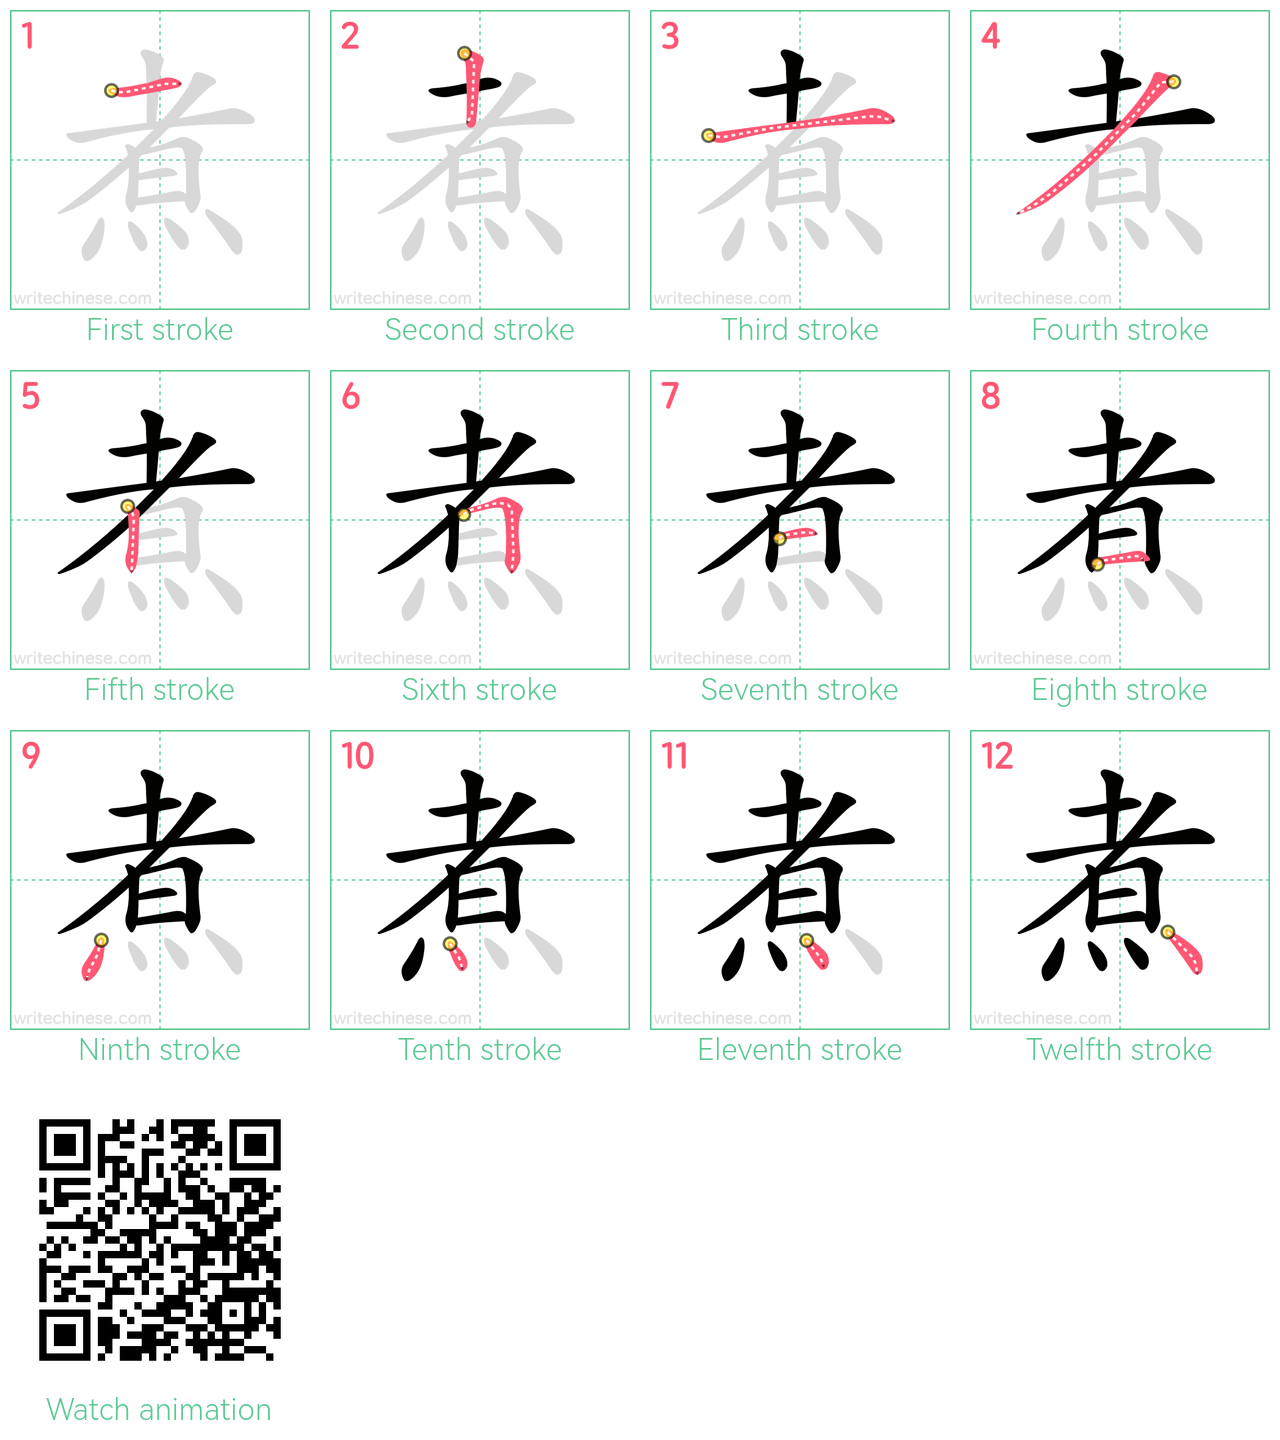 煮 step-by-step stroke order diagrams